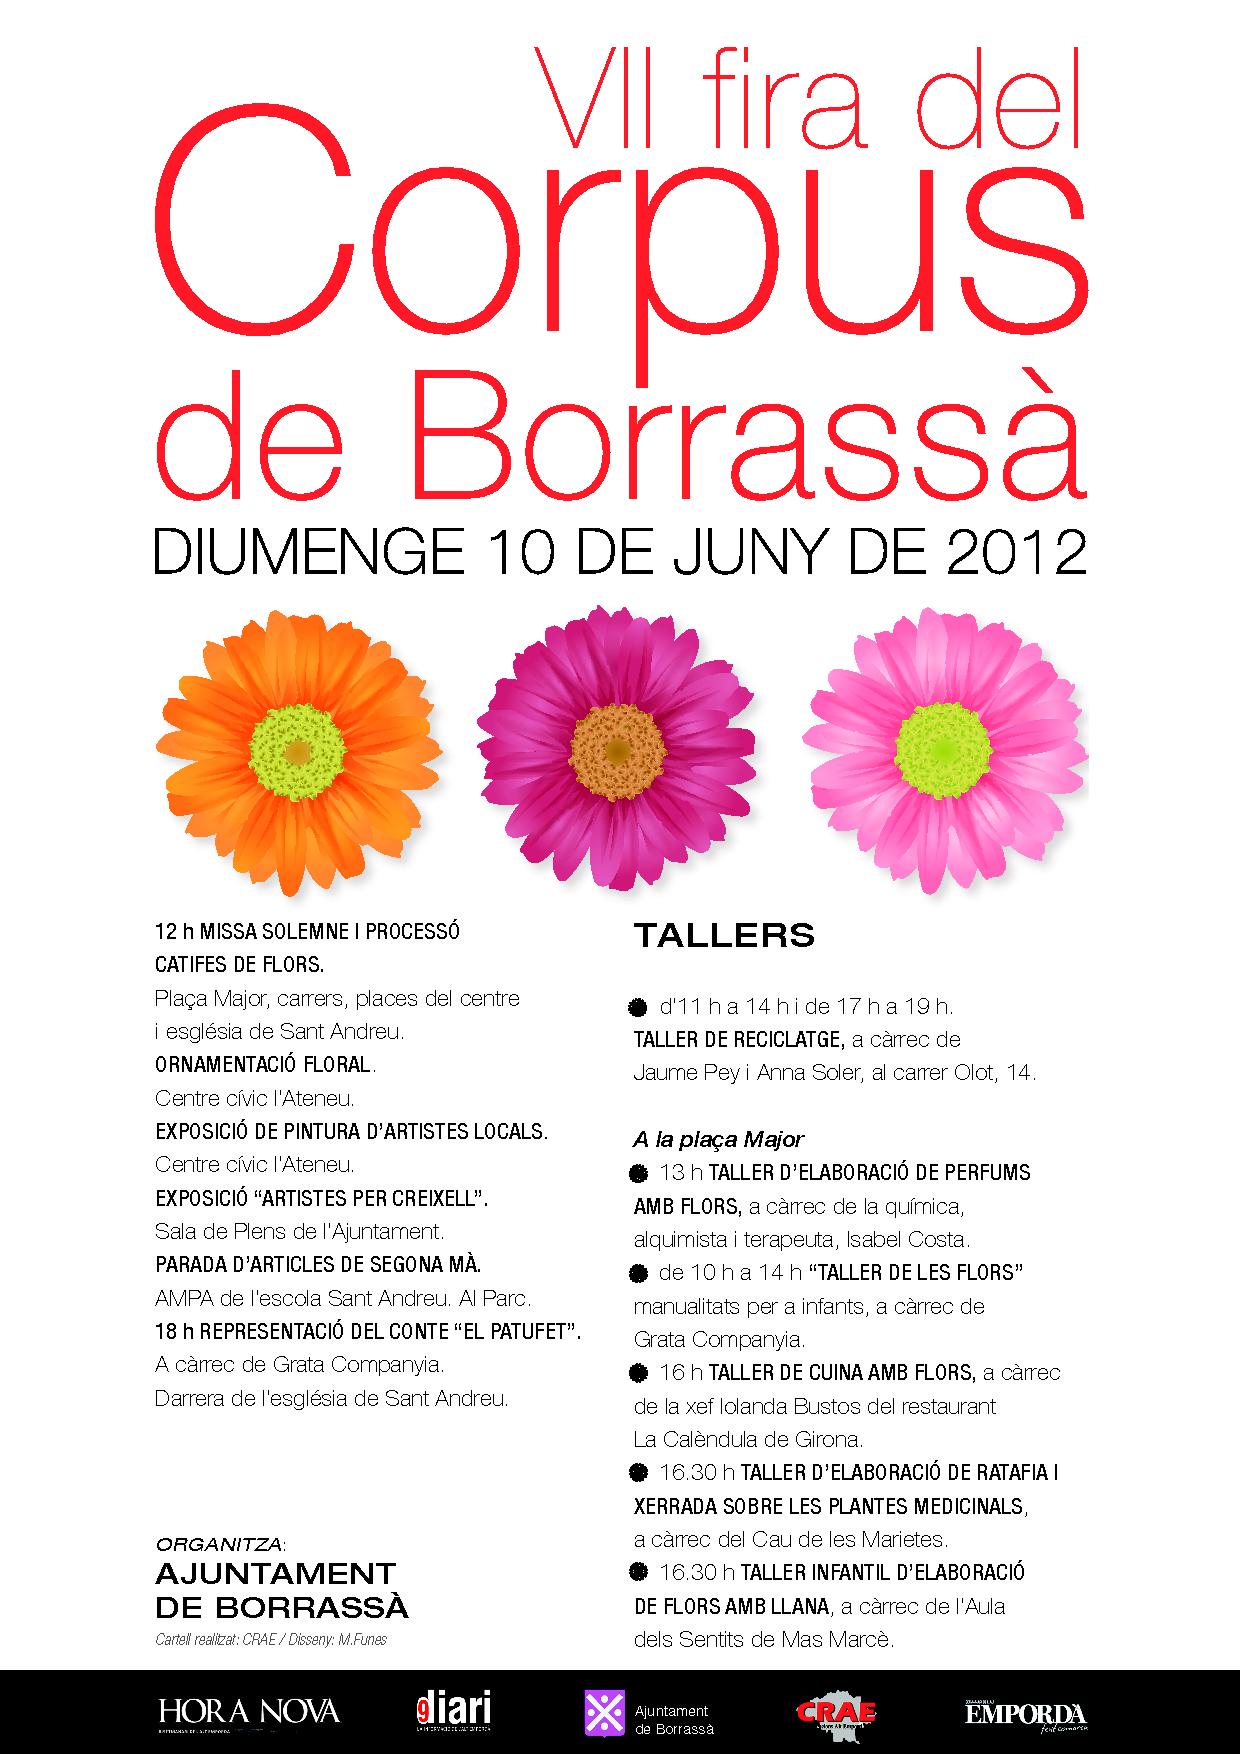 El proper diumenge 10 de juny, Borrassà acollirà la VII fira del Corpus amb aquests actes gratuïts: Missa solemne i processó, catifes de flors, ornamentació floral, activitats infantils, exposicions i tallers de reciclatge i relacionats amb les flors.